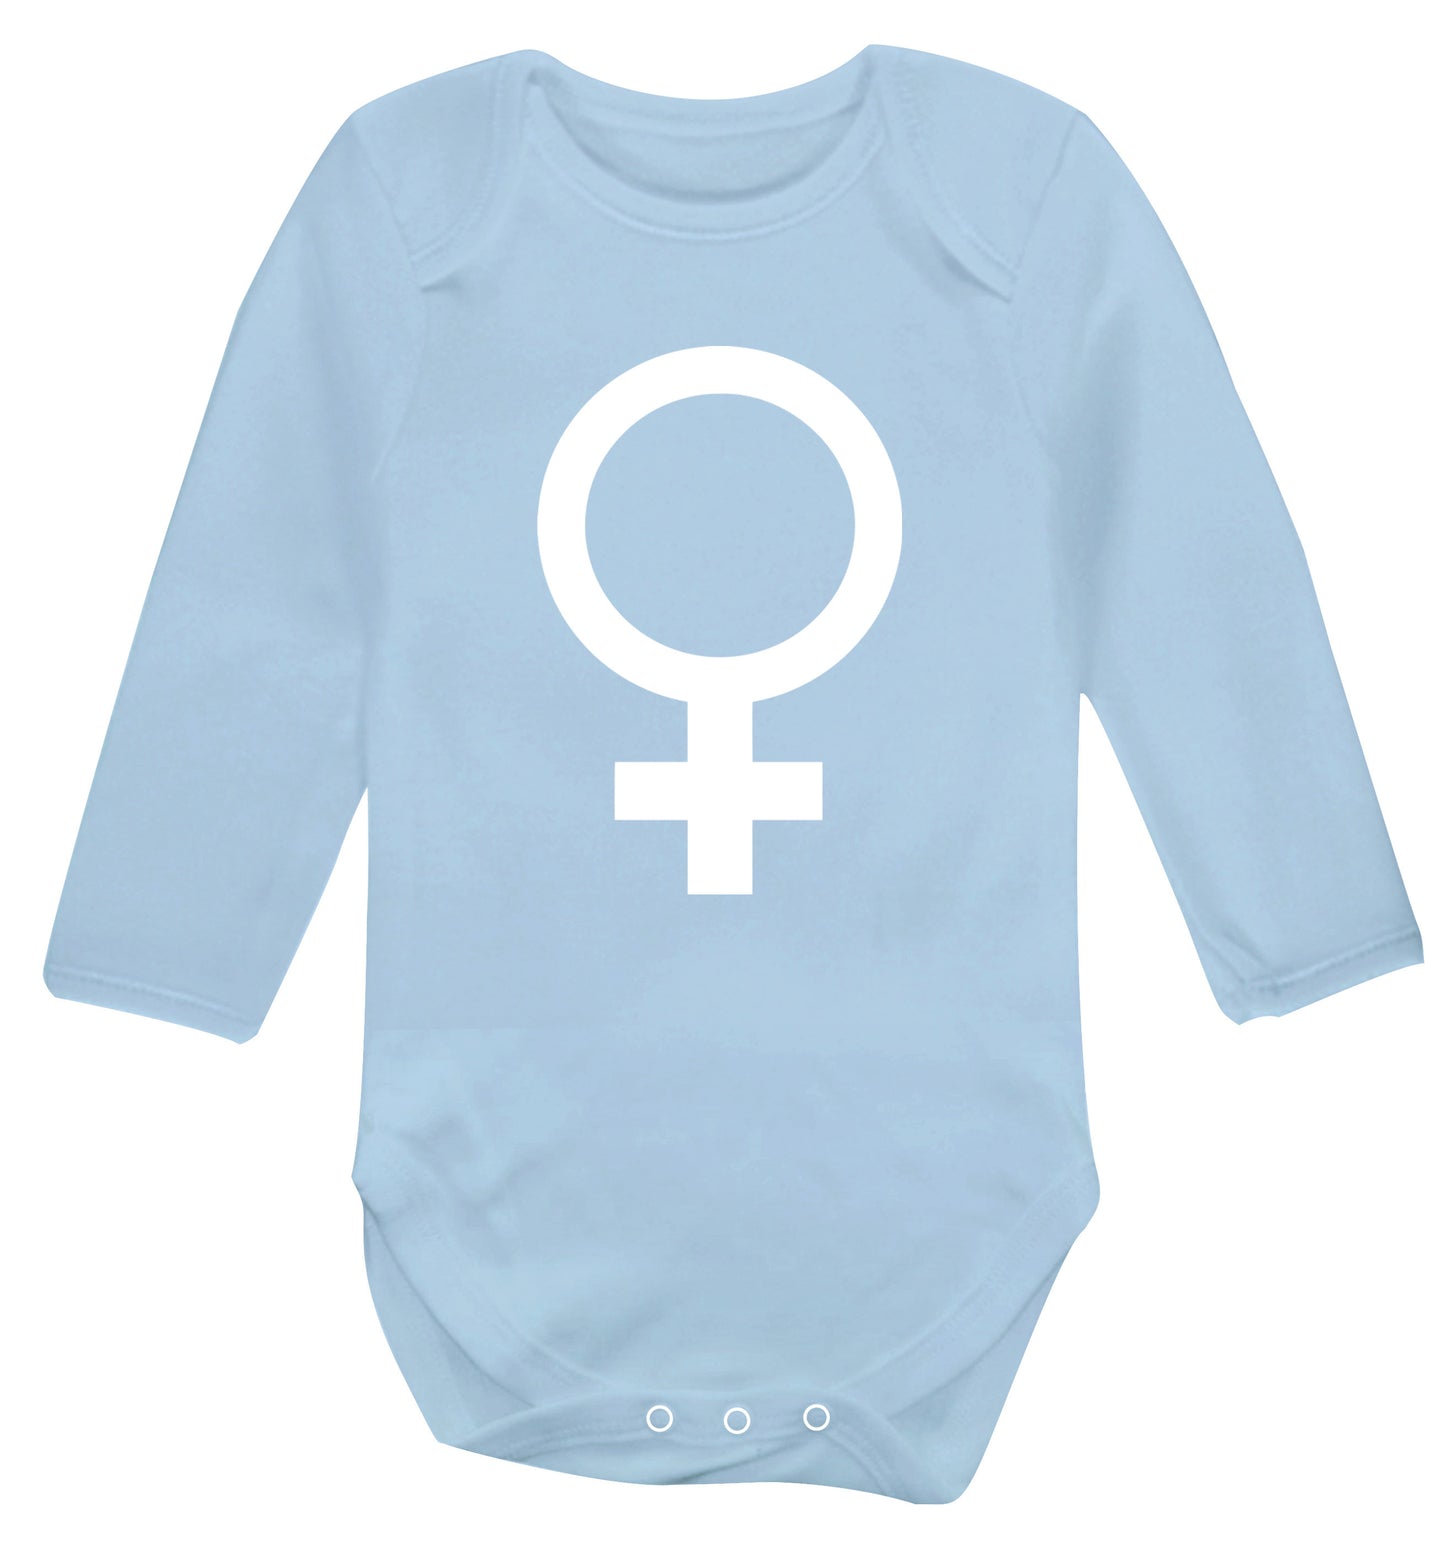 Female symbol large Baby Vest long sleeved pale blue 6-12 months